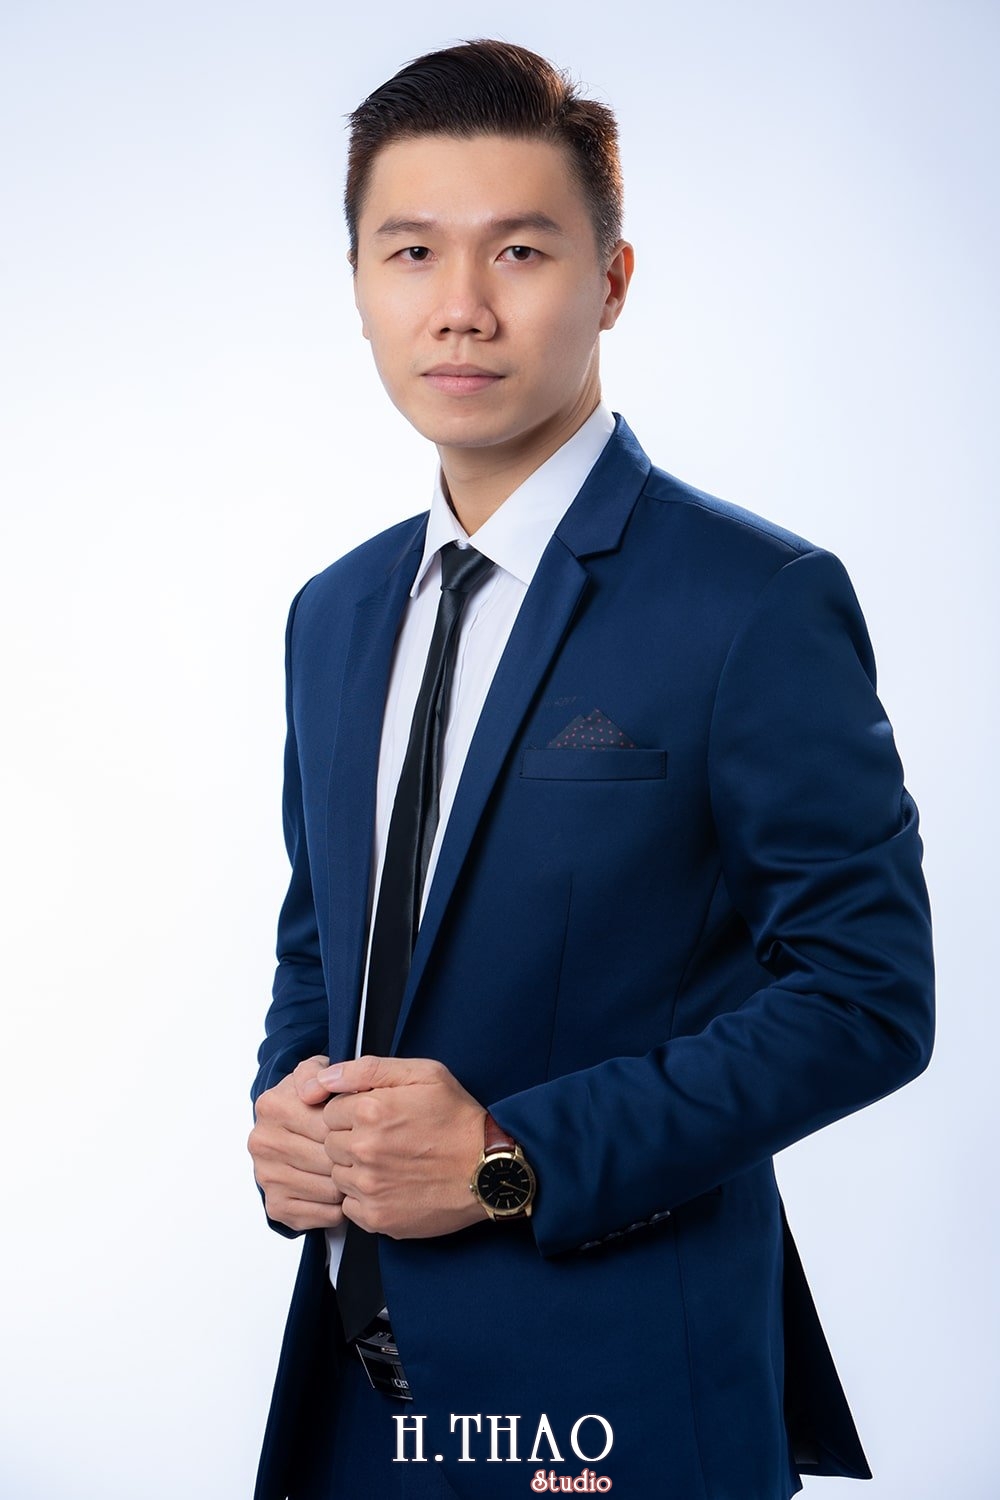 anh profile ca nhan nam 3 - Dịch vụ chụp ảnh CV đẹp, chuyên nghiệp tại Tp.HCM - HThao Studio